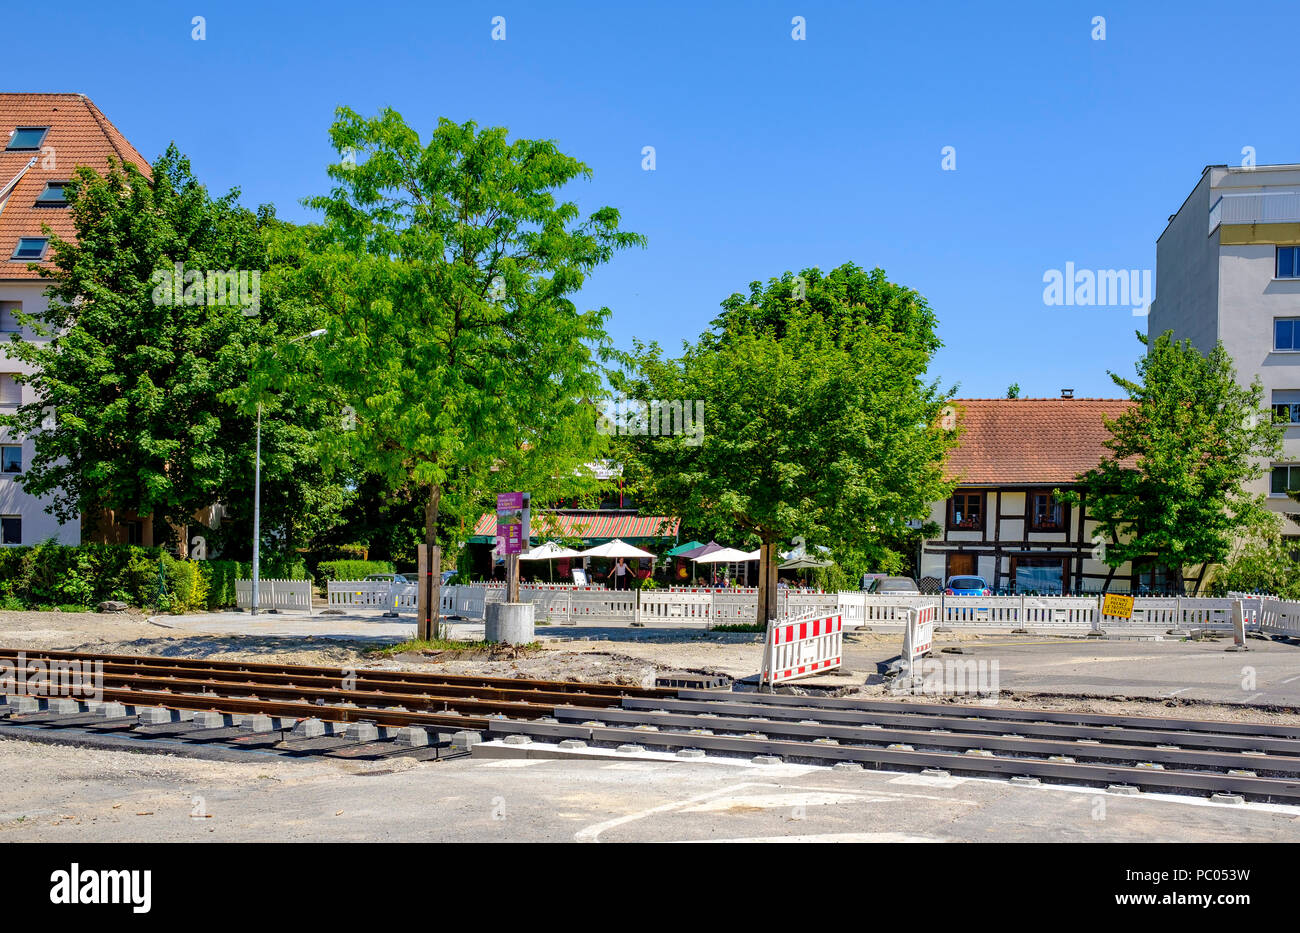 Strasburgo, tram sito in costruzione, binari ferroviari, letto in calcestruzzo, case, linea e estensione, Alsazia, Francia, Europa Foto Stock